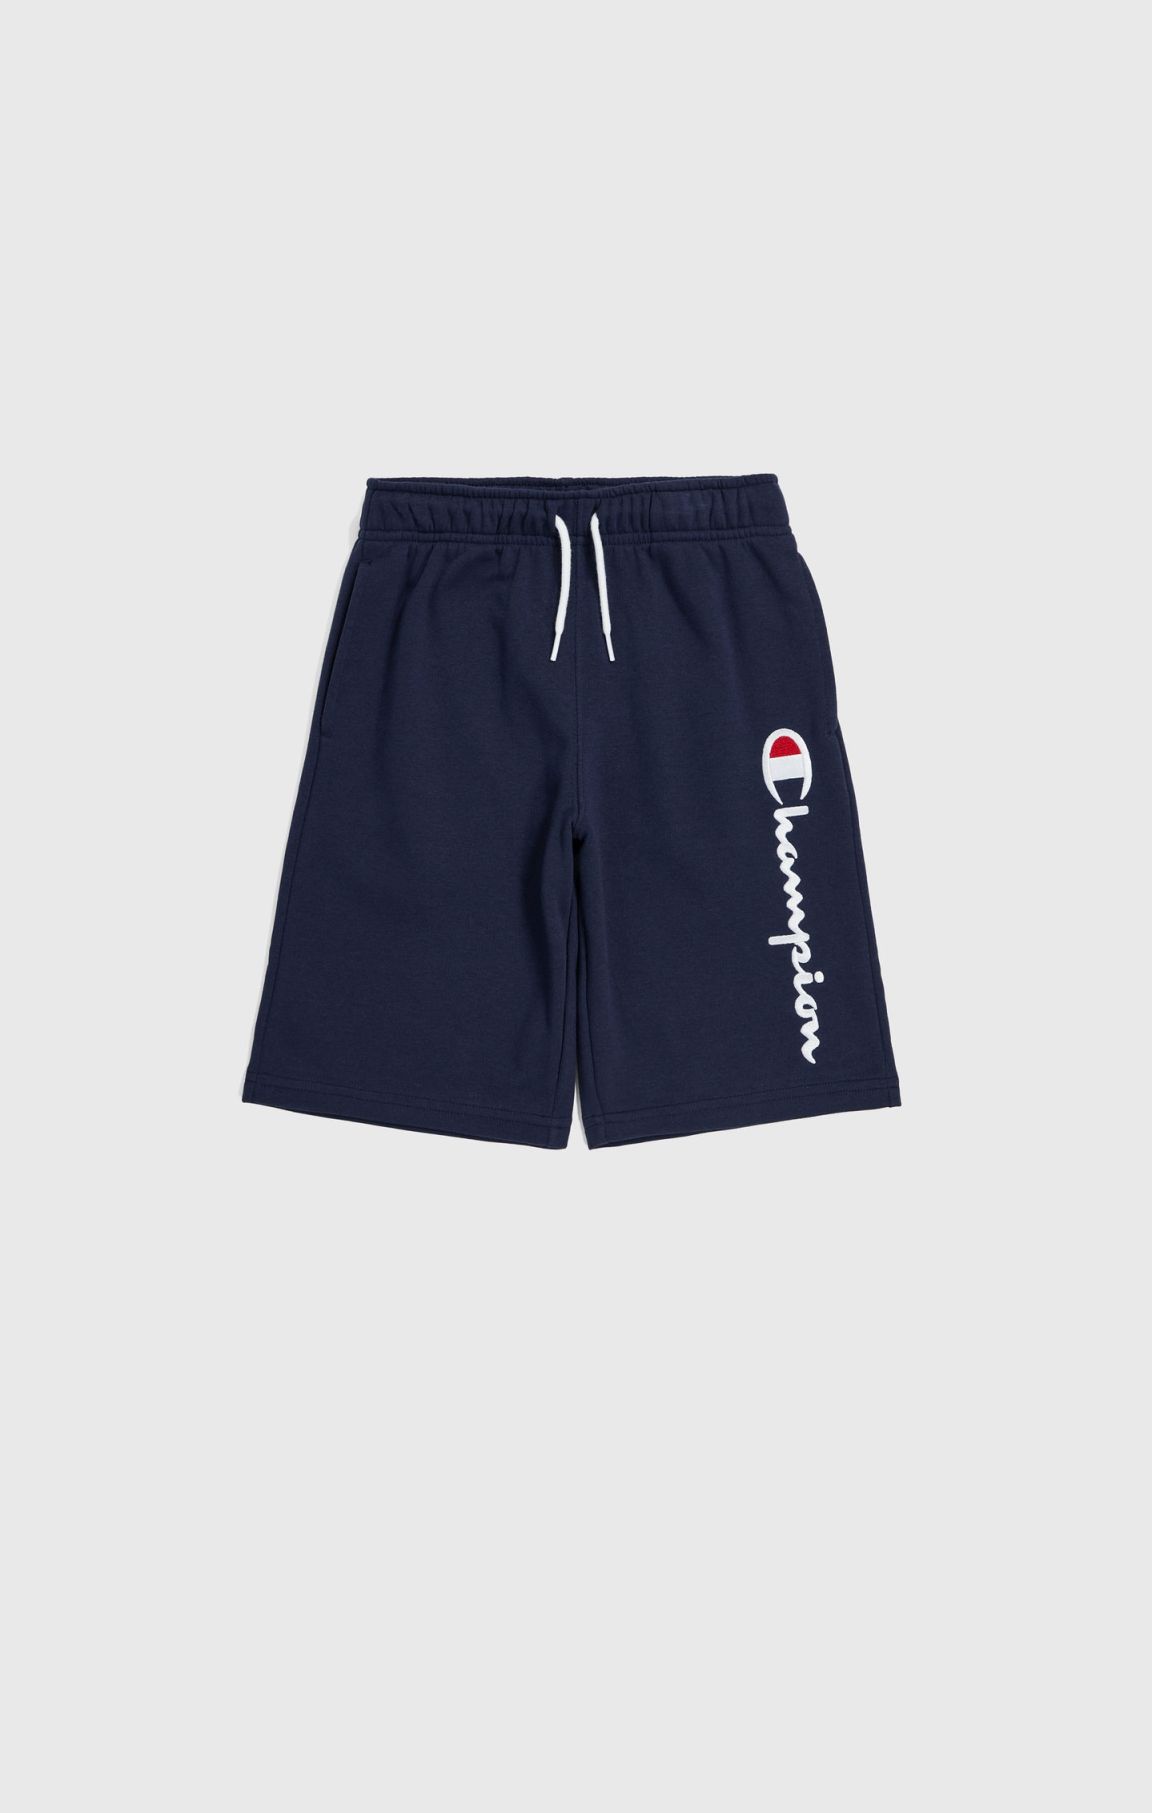 Jungen-Shorts mit Champion-Logo